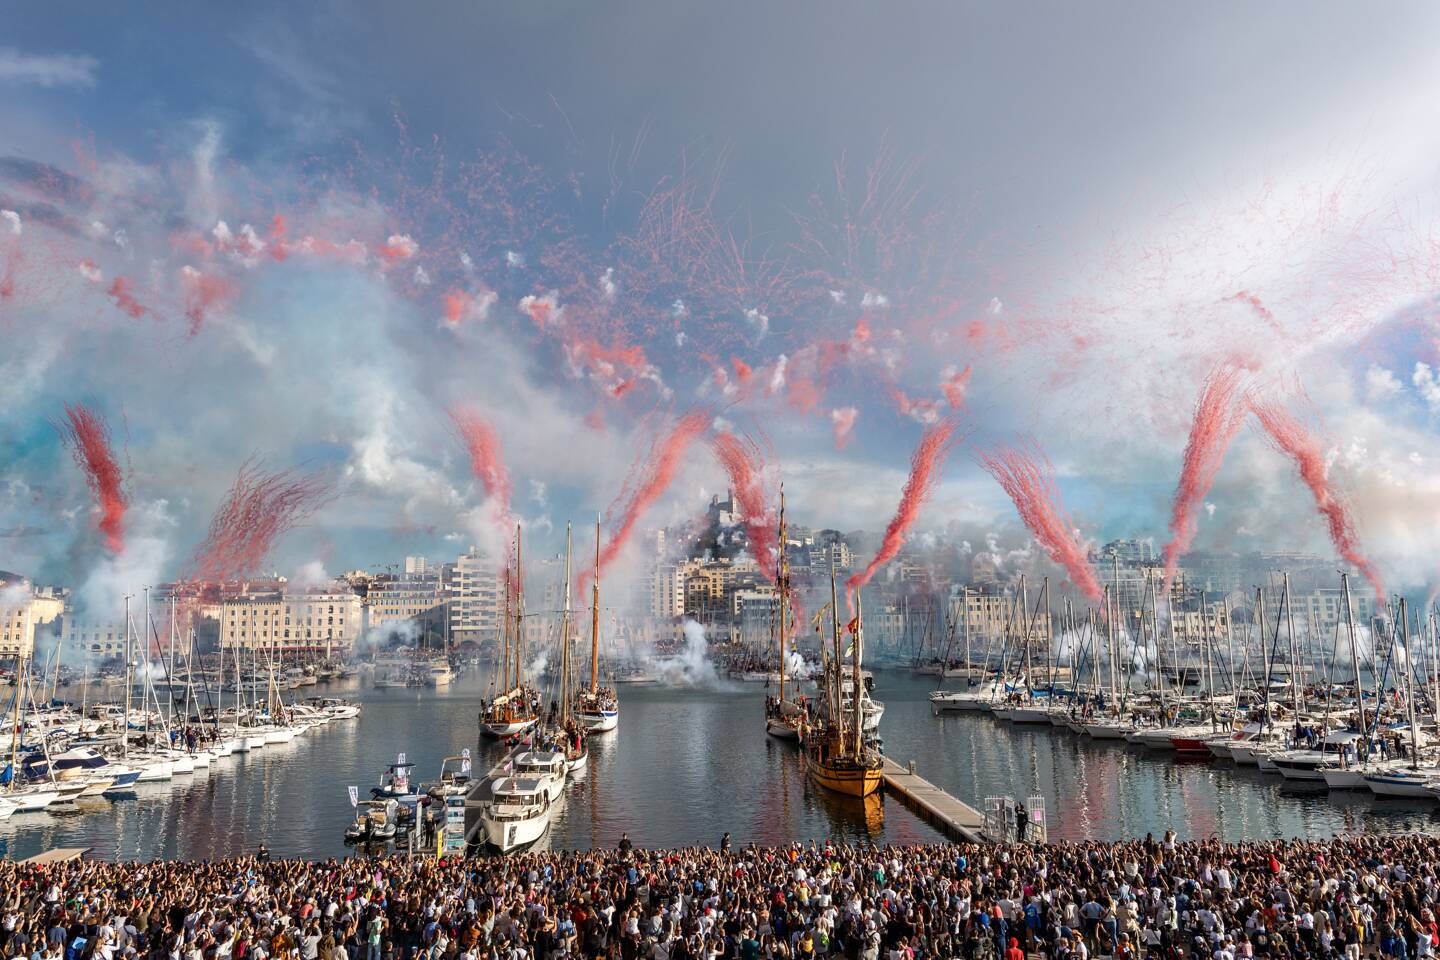 La foule des grands jours hier sur le Vieux-Port de Marseille pour accueillir le trois-mâts Belem et la flamme olympique. (Photo Florian Escoffier).